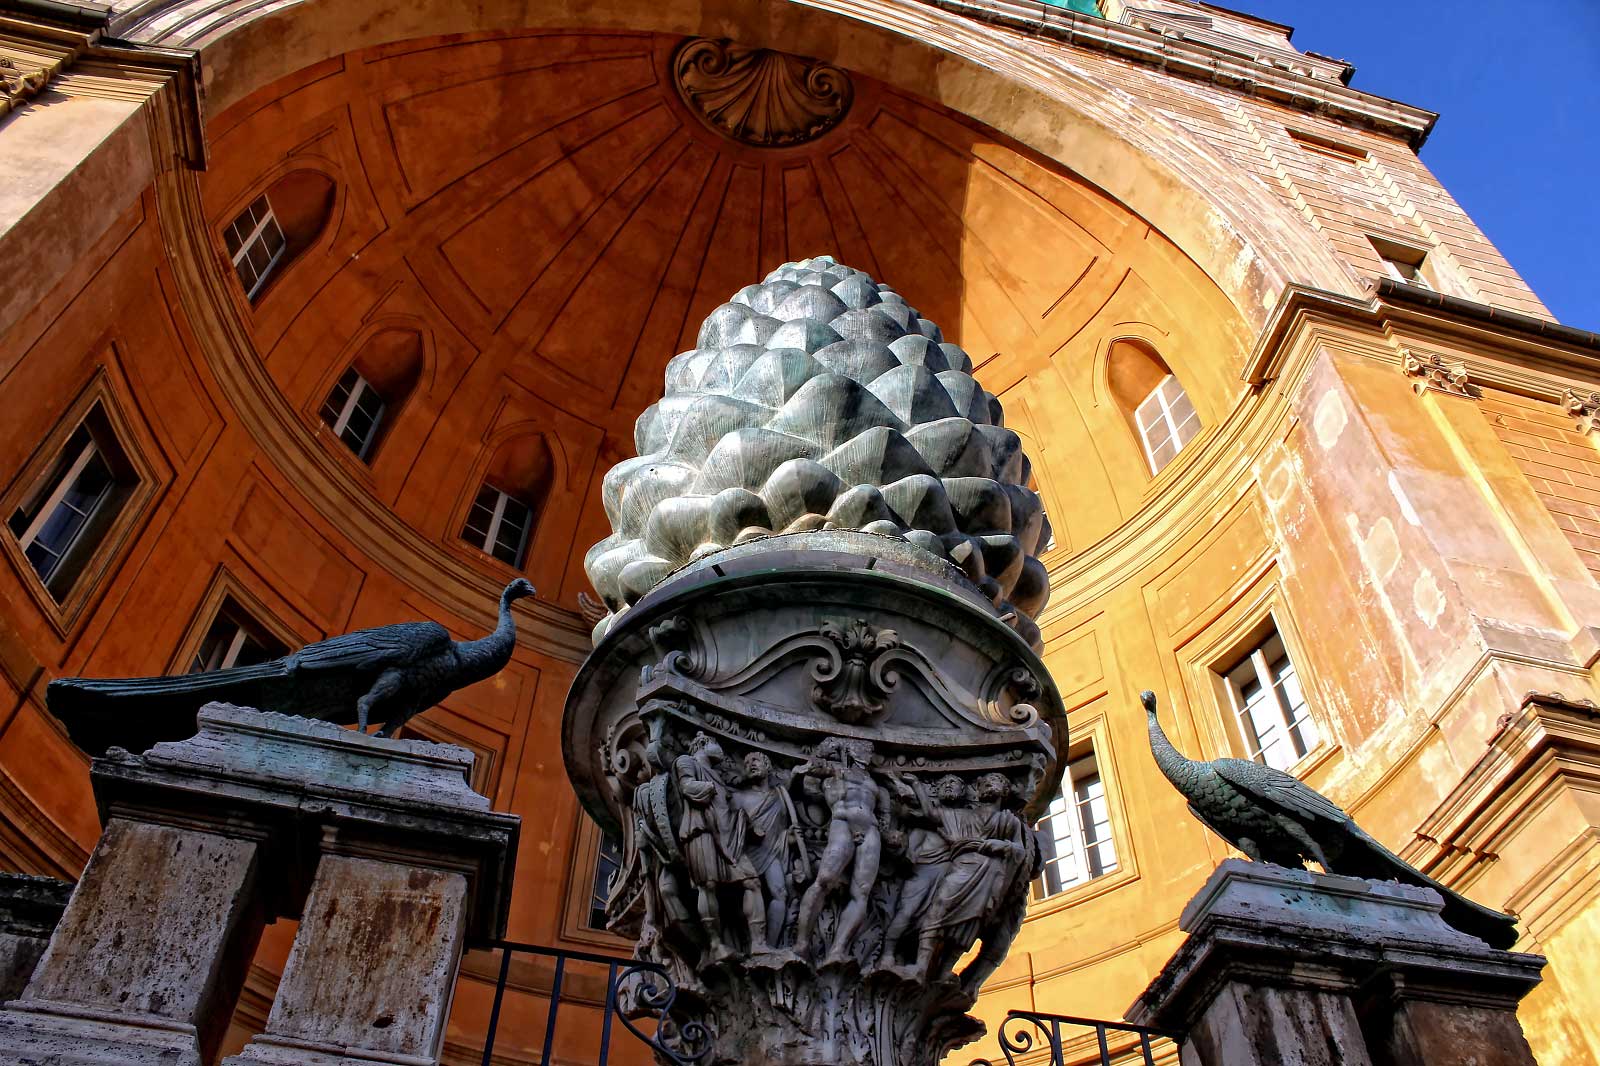 Visitez la Cour de Pigne, une oasis au sein des Musées du Vatican où vous pourrez trouver cette sculpture symbolique datant de l’Antiquité qui lui a donné son nom.